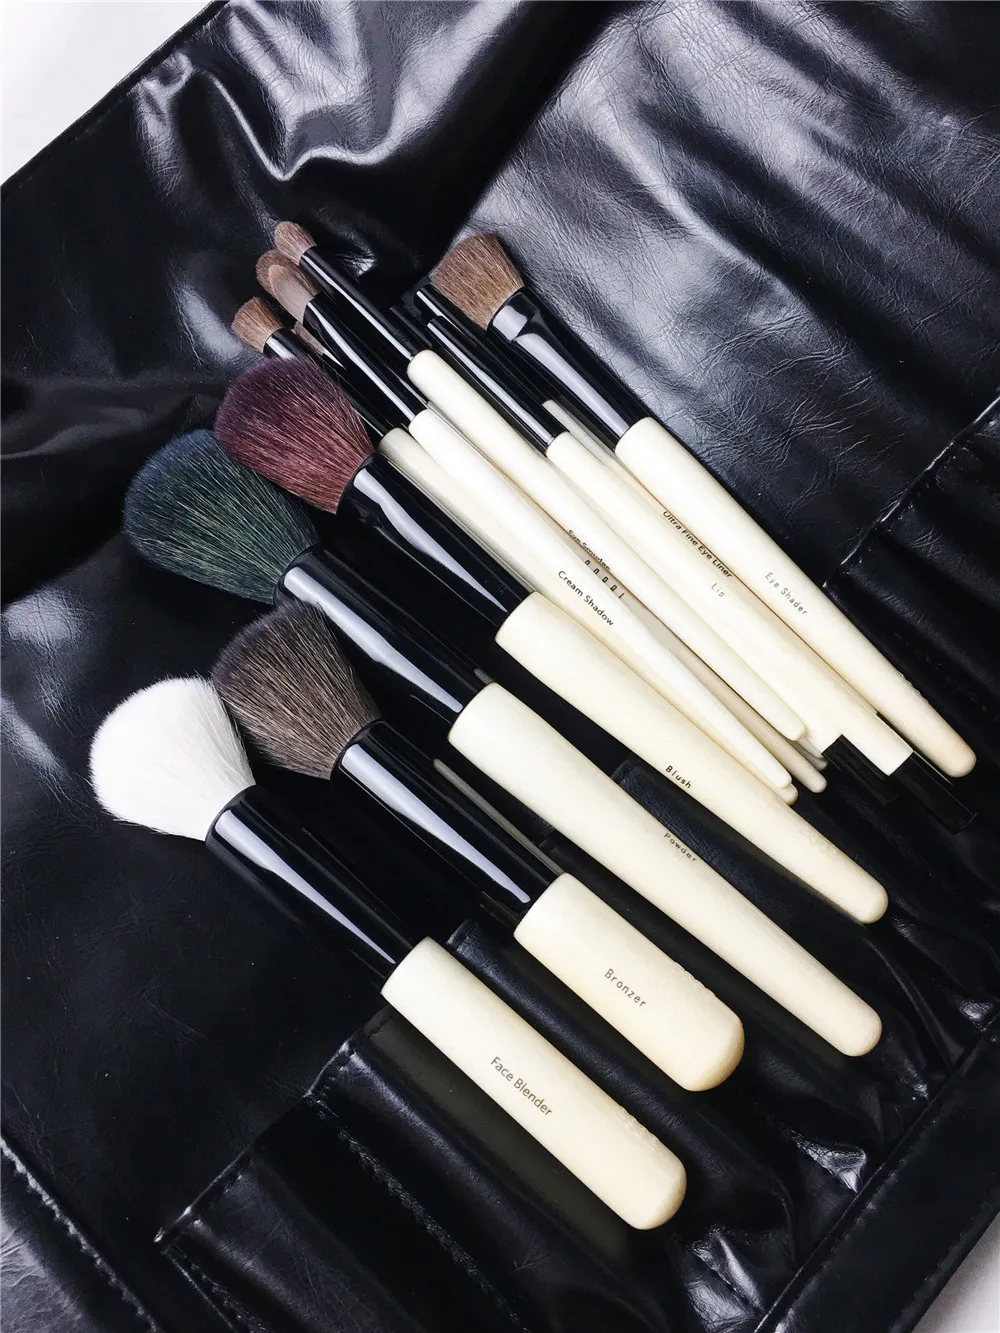 BB-SERIES 18-Brushes El juego completo de brochas - Juego de brochas con mango de madera de calidad - Pinceles de maquillaje de belleza Blender Tool